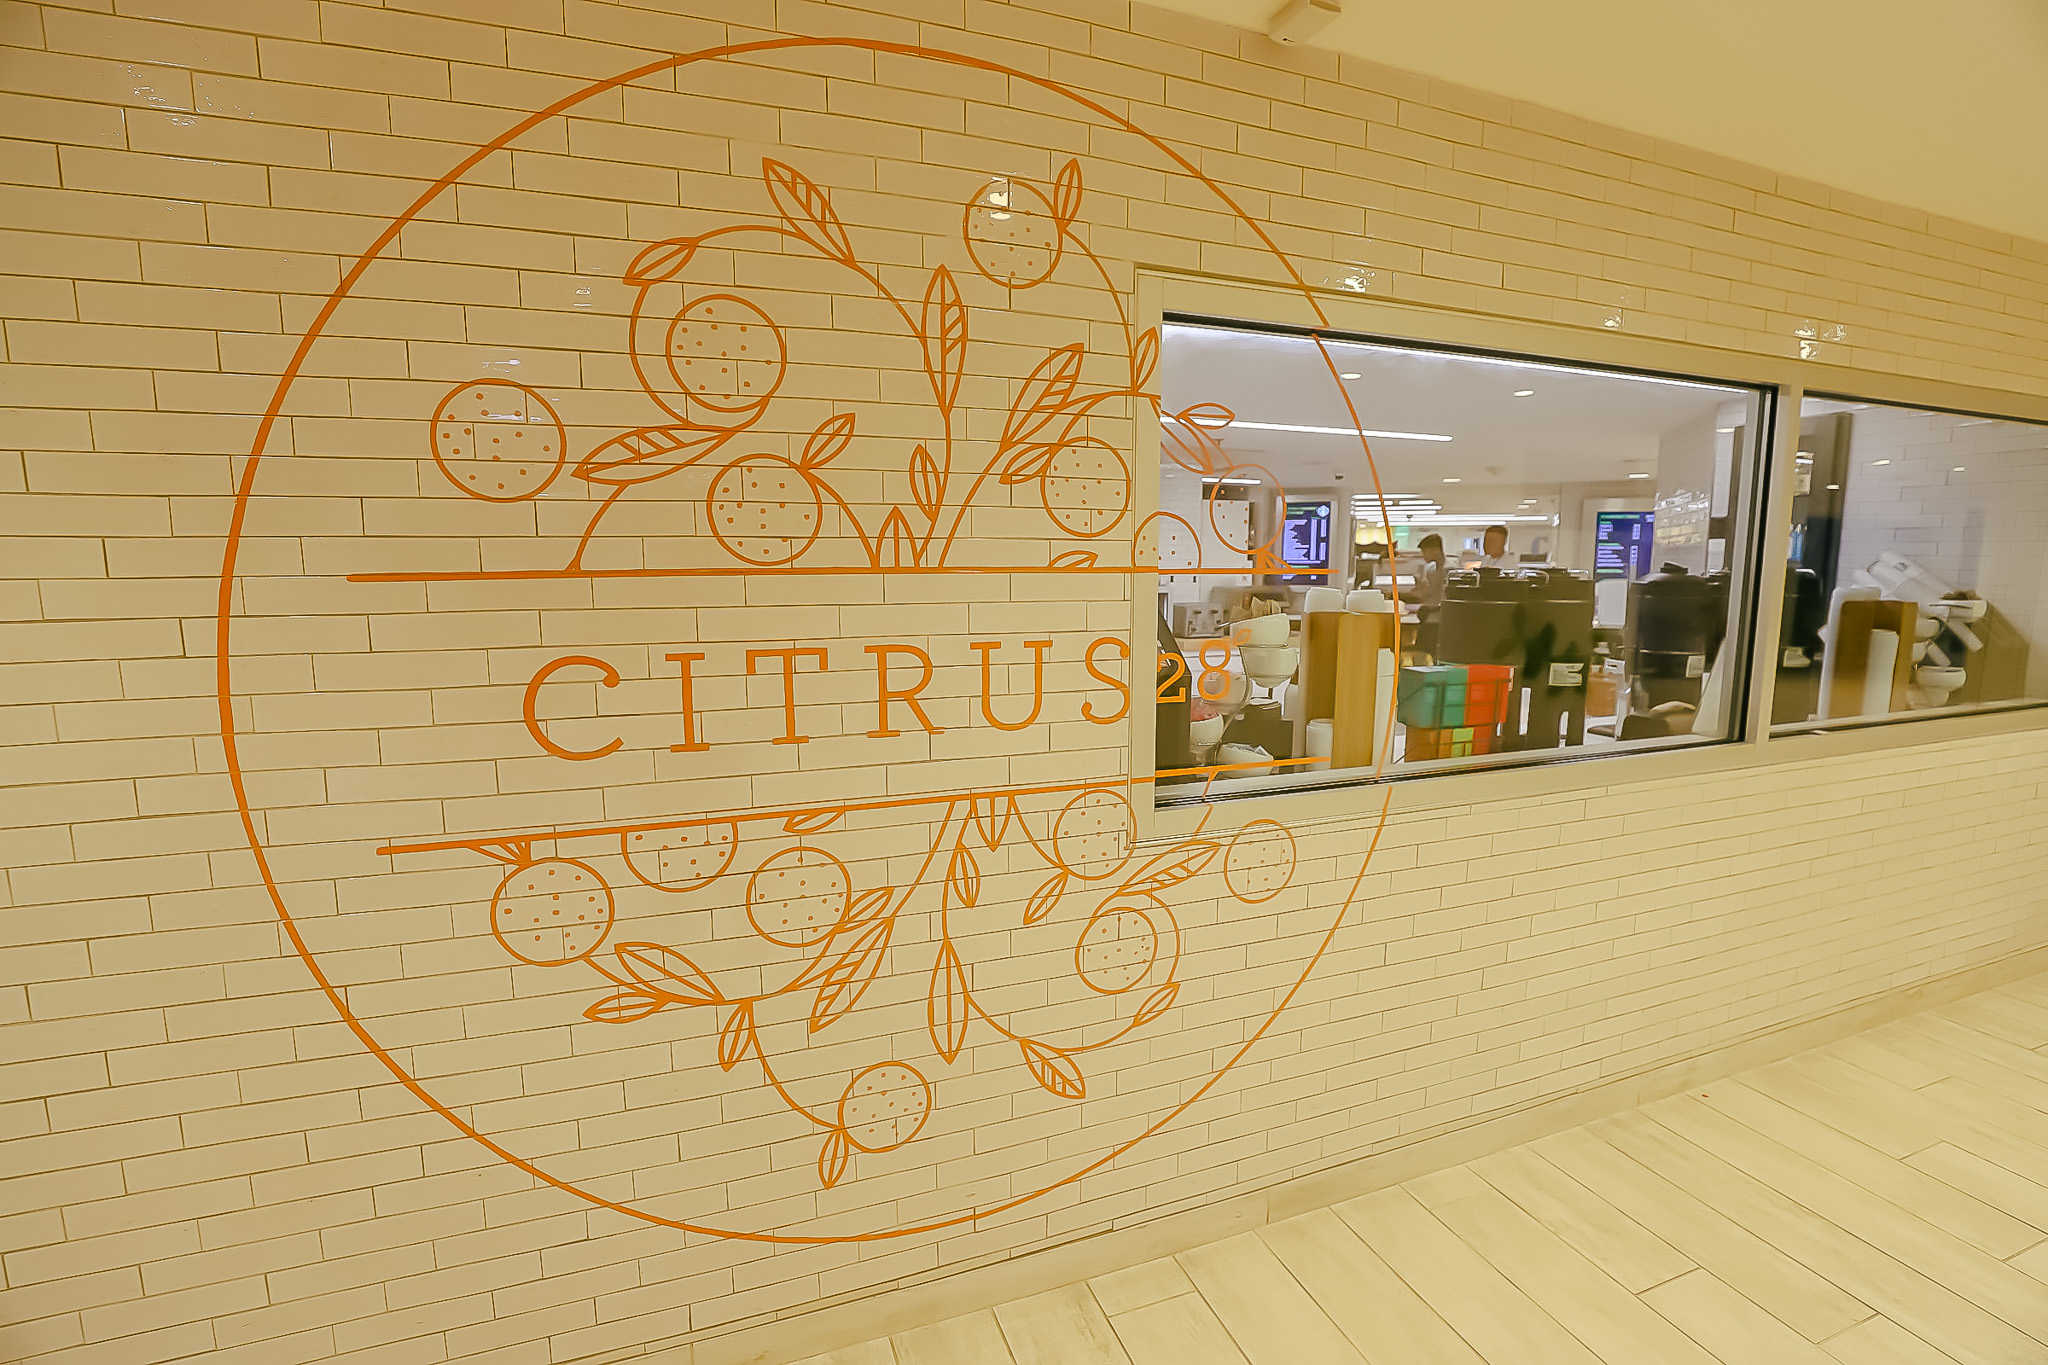 entrance to Citrus 29 quick service restaurant 